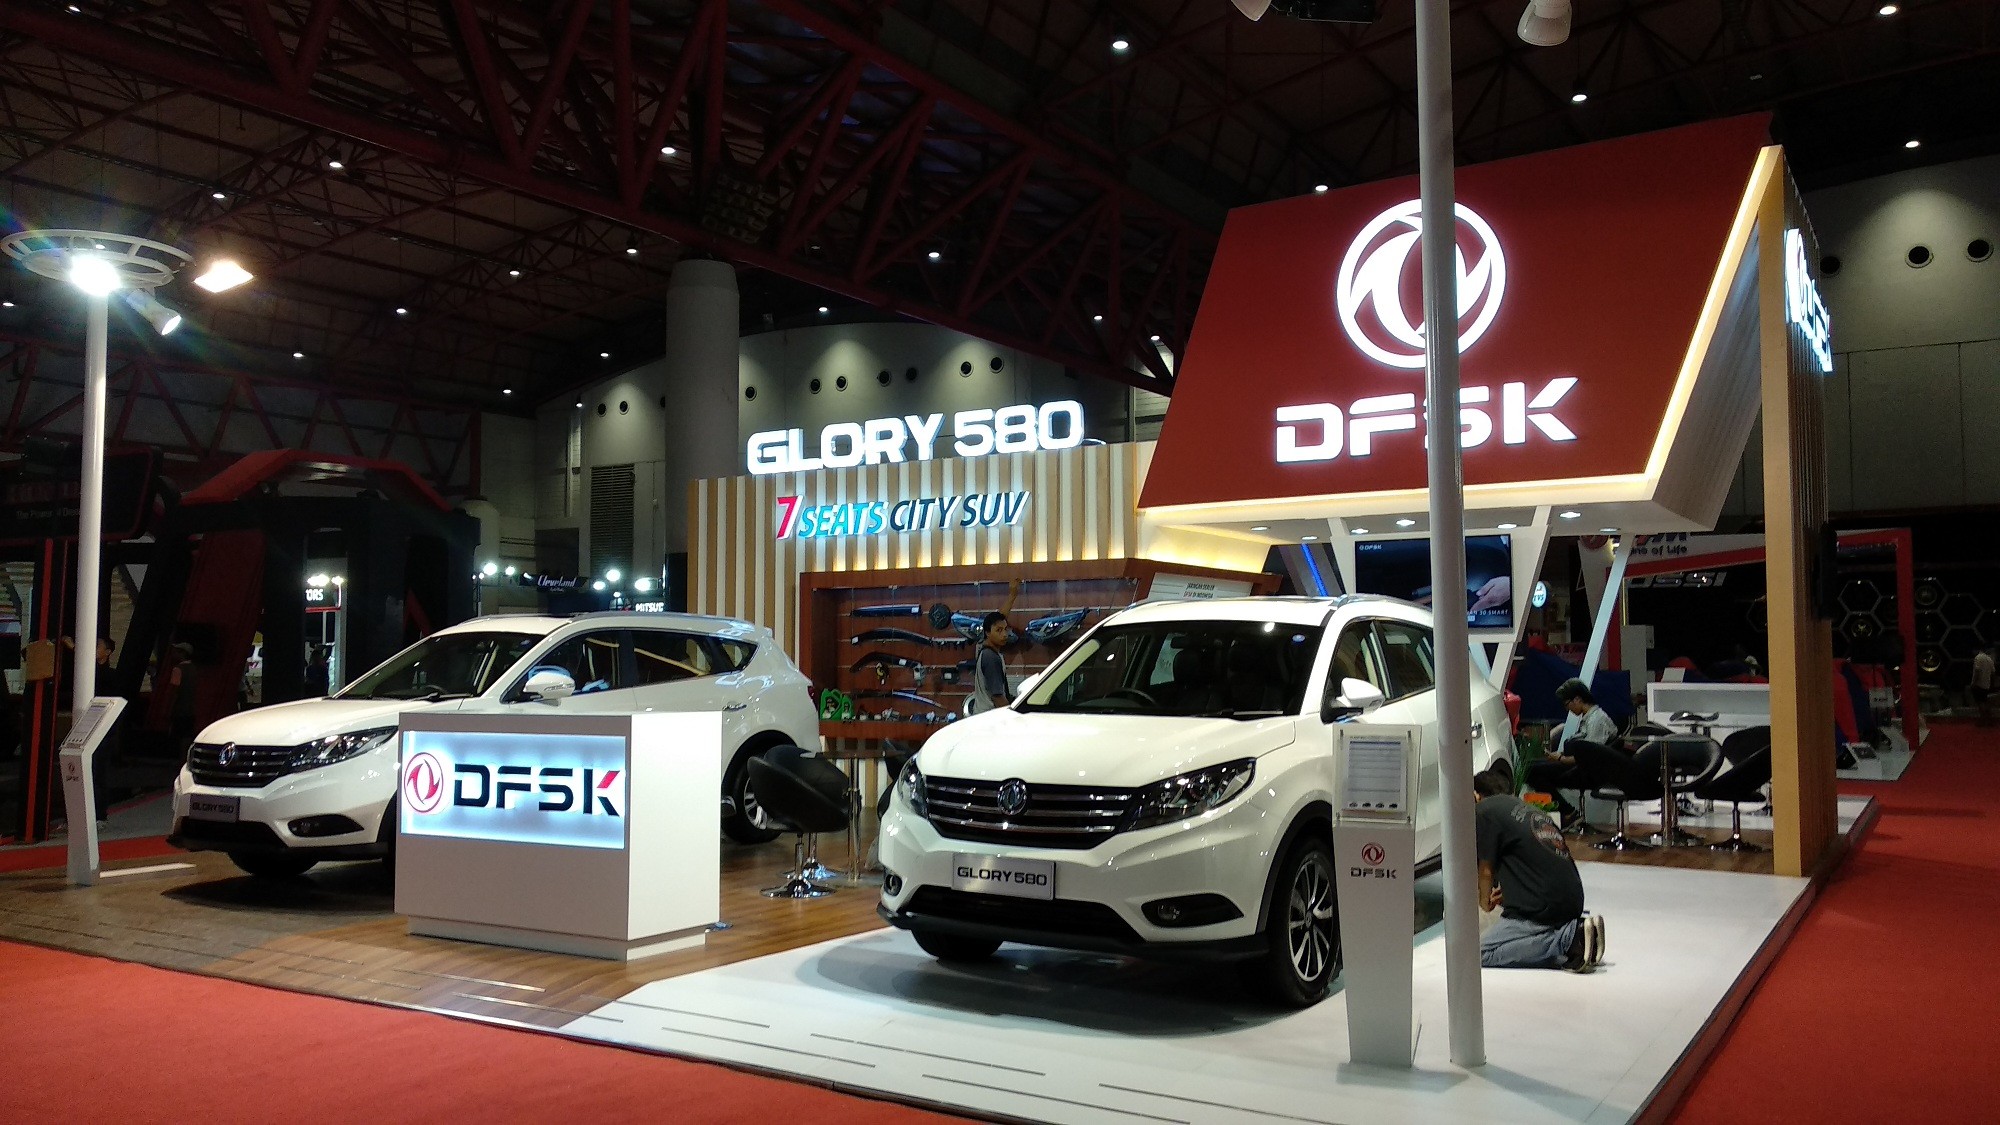 Harga & Review DFSK Glory 580 di Jakarta Fair Kemayoran 2018